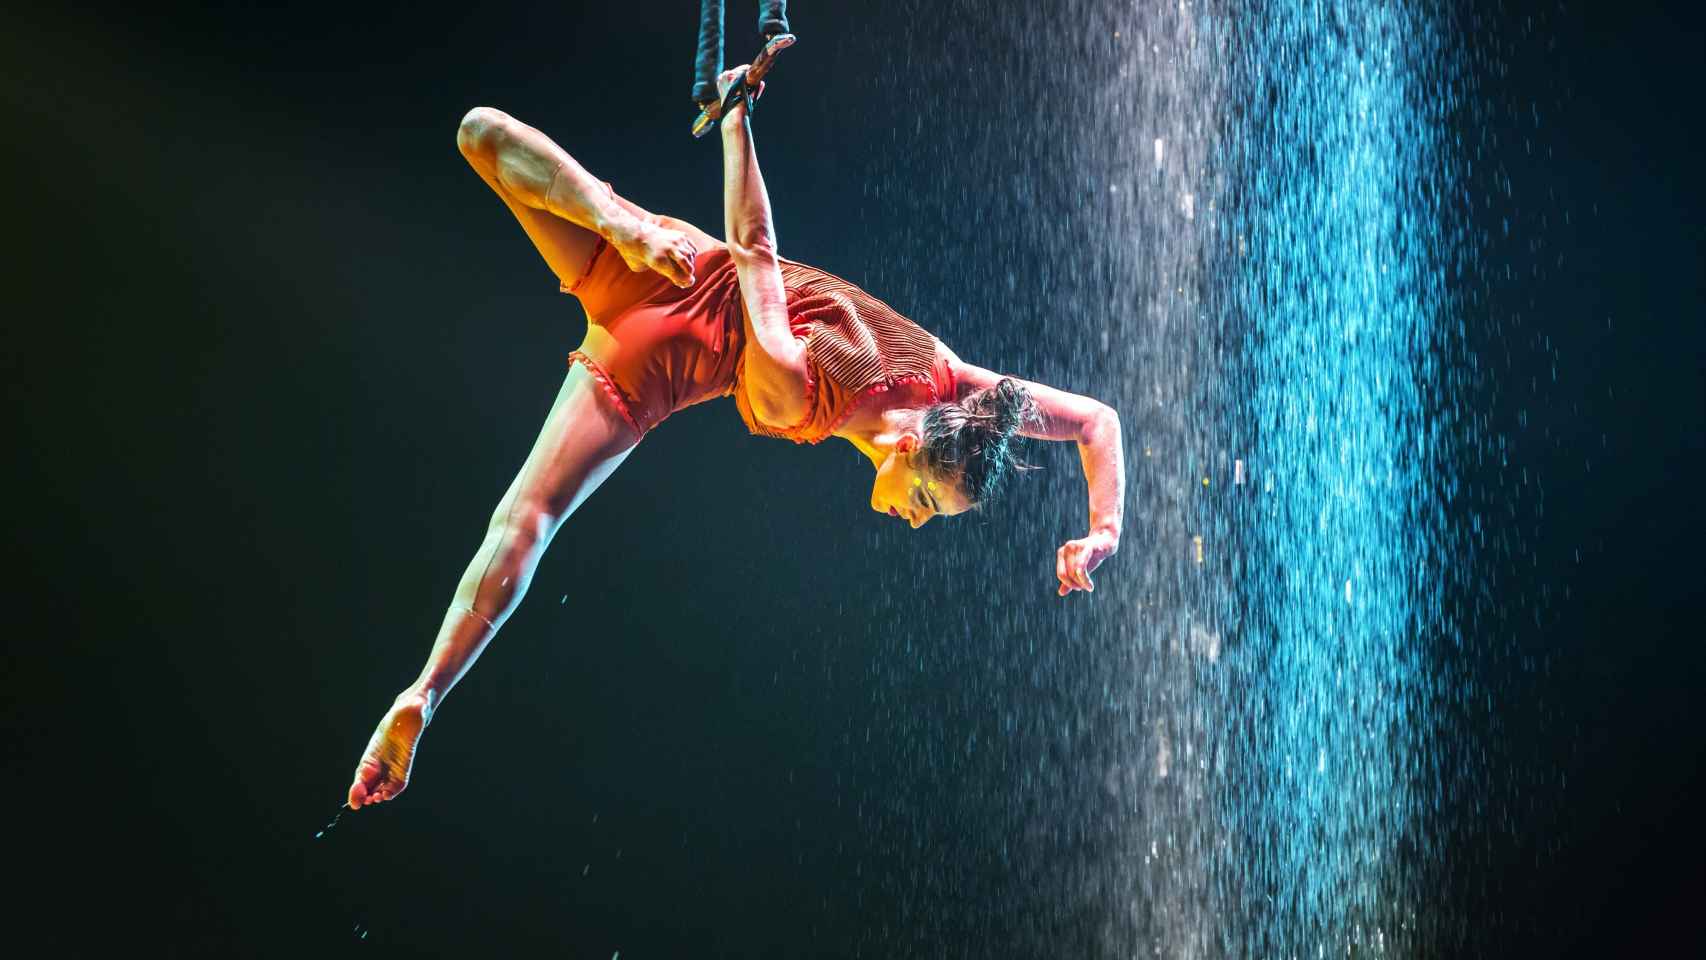 'Luzia' introduce el agua en varias de las acrobacias que ejecutarán sus artistas en Alicante.